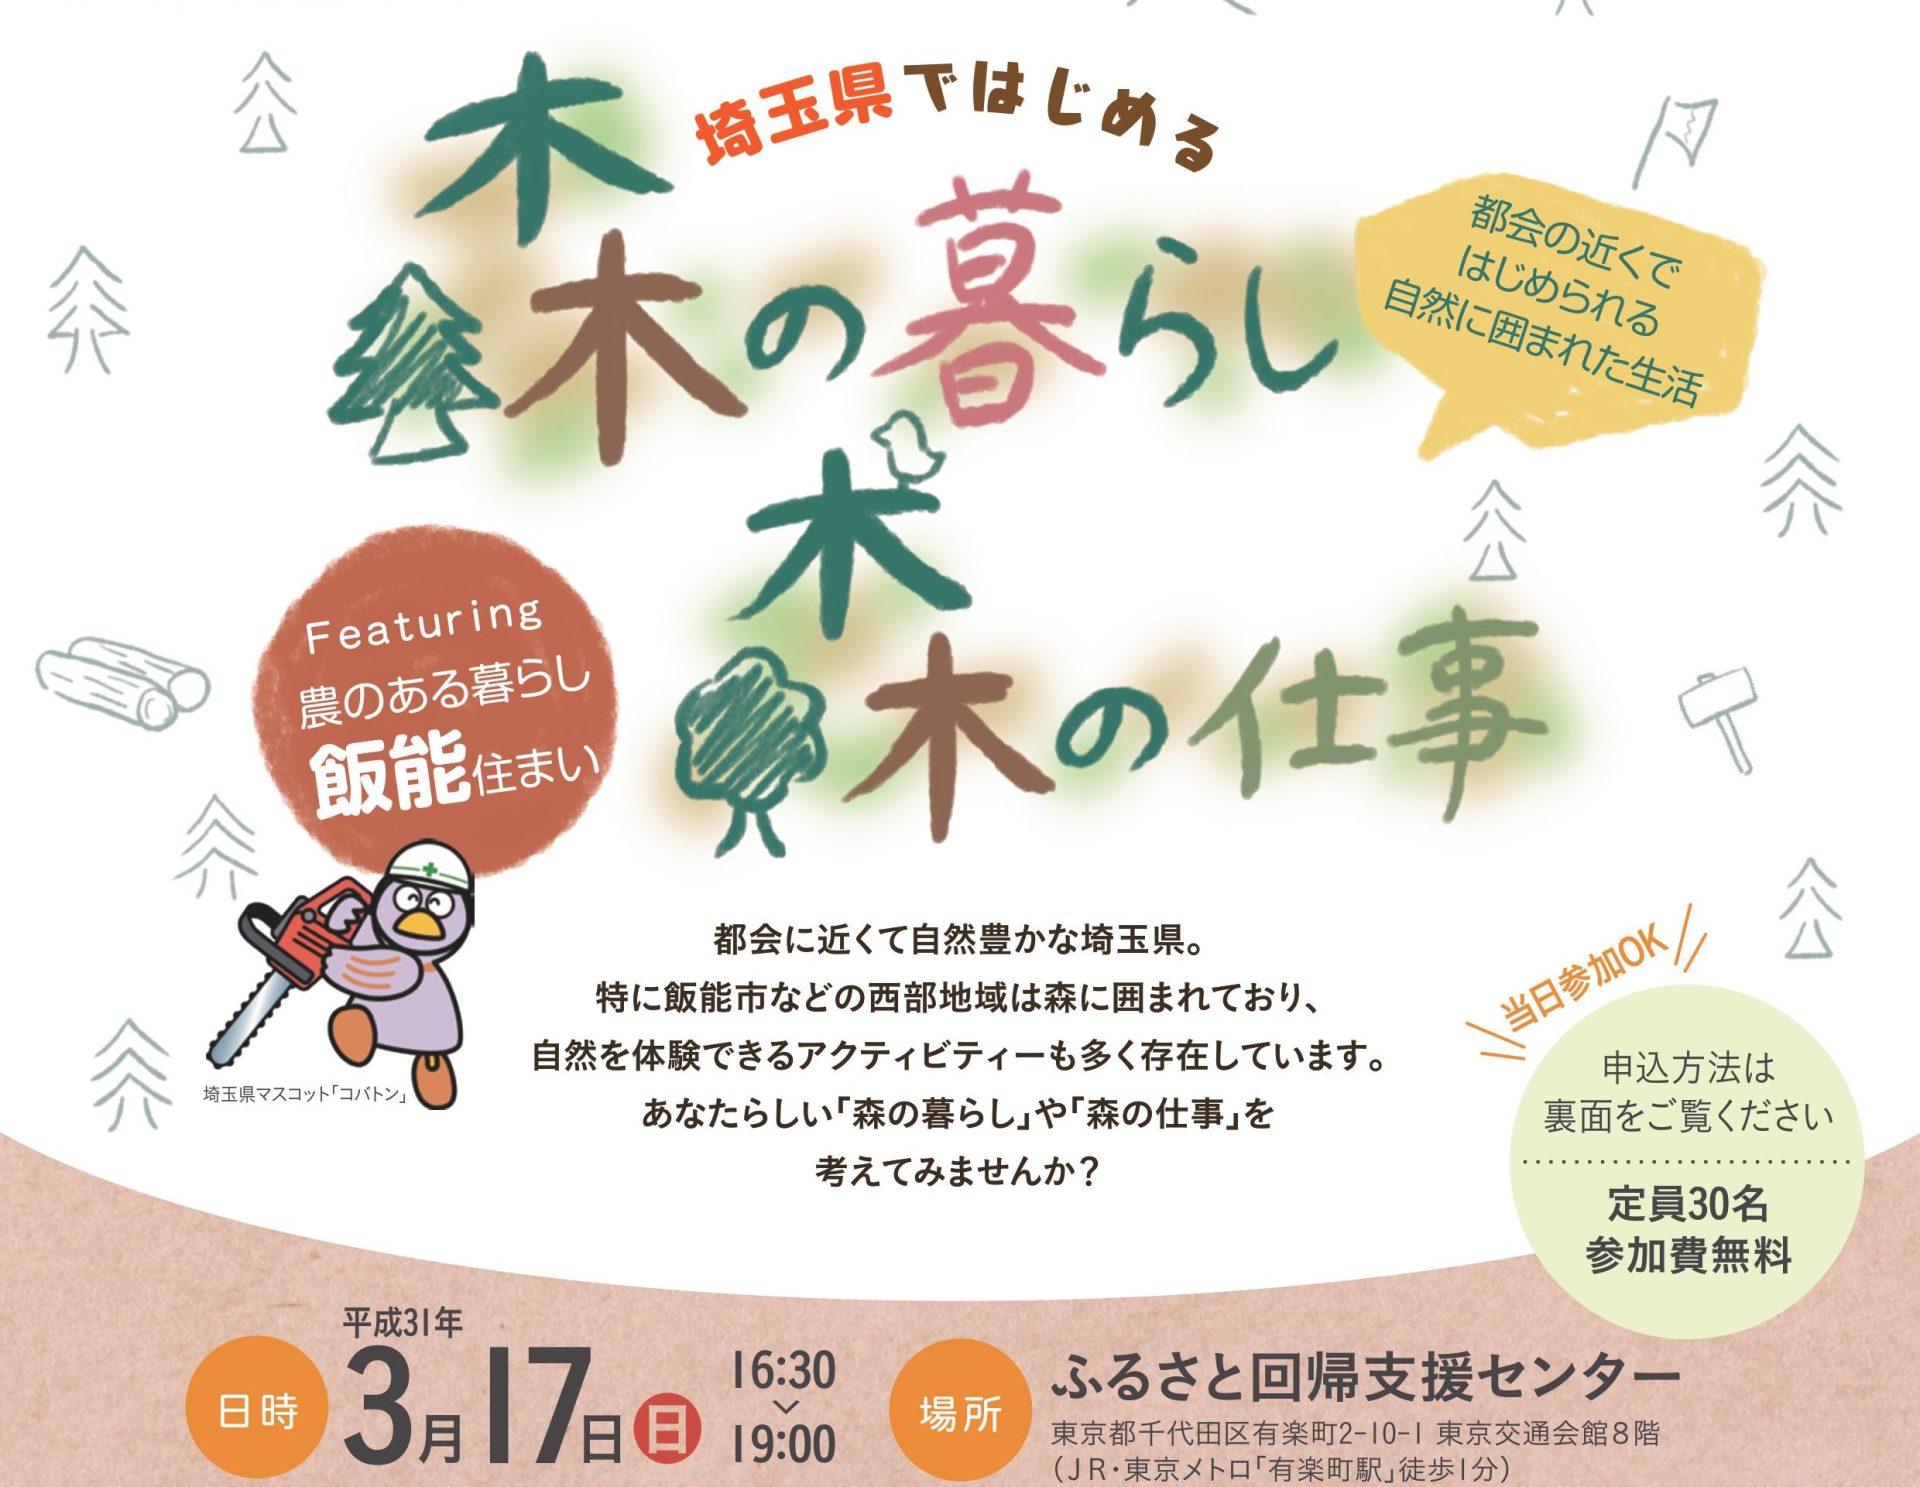 埼玉県ではじめる森の暮らし・森の仕事featuring農のある暮らし飯能住まい | 移住関連イベント情報